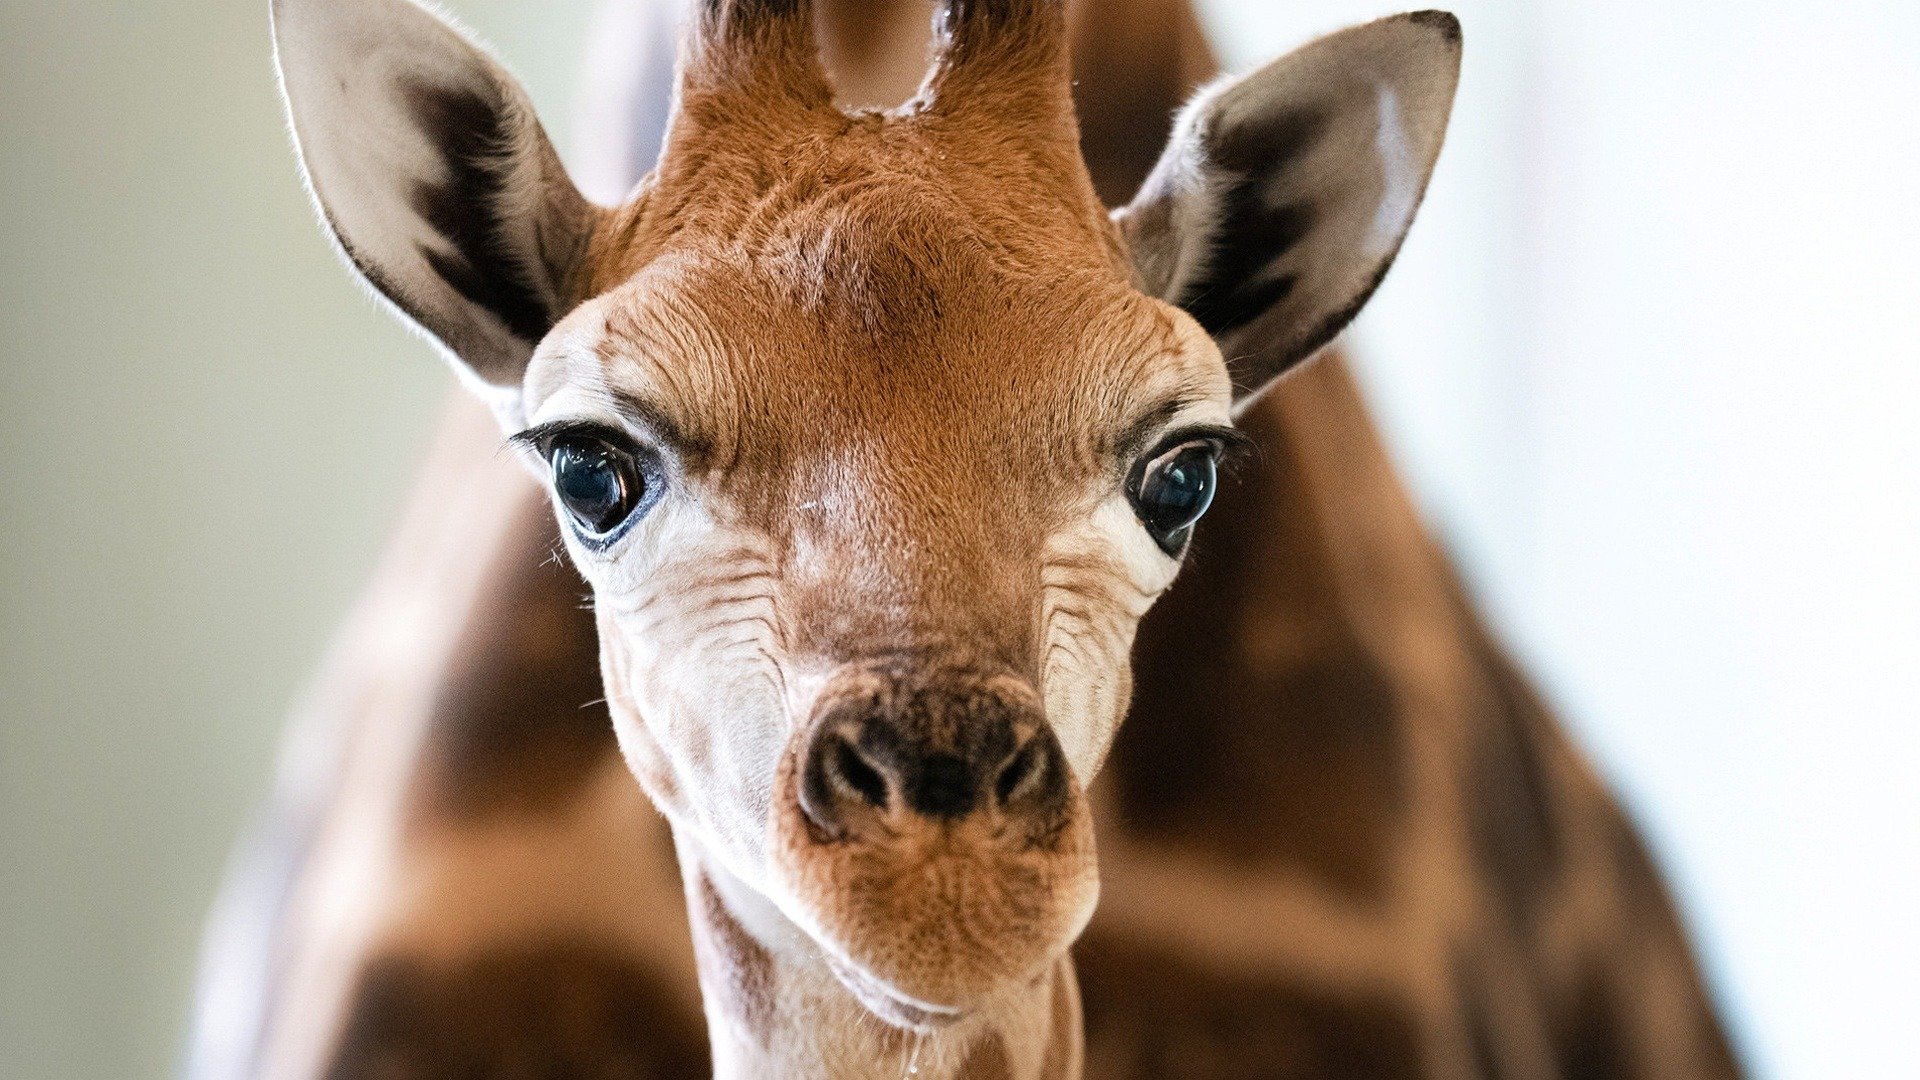 4. A Baby Giraffe's Tall Order